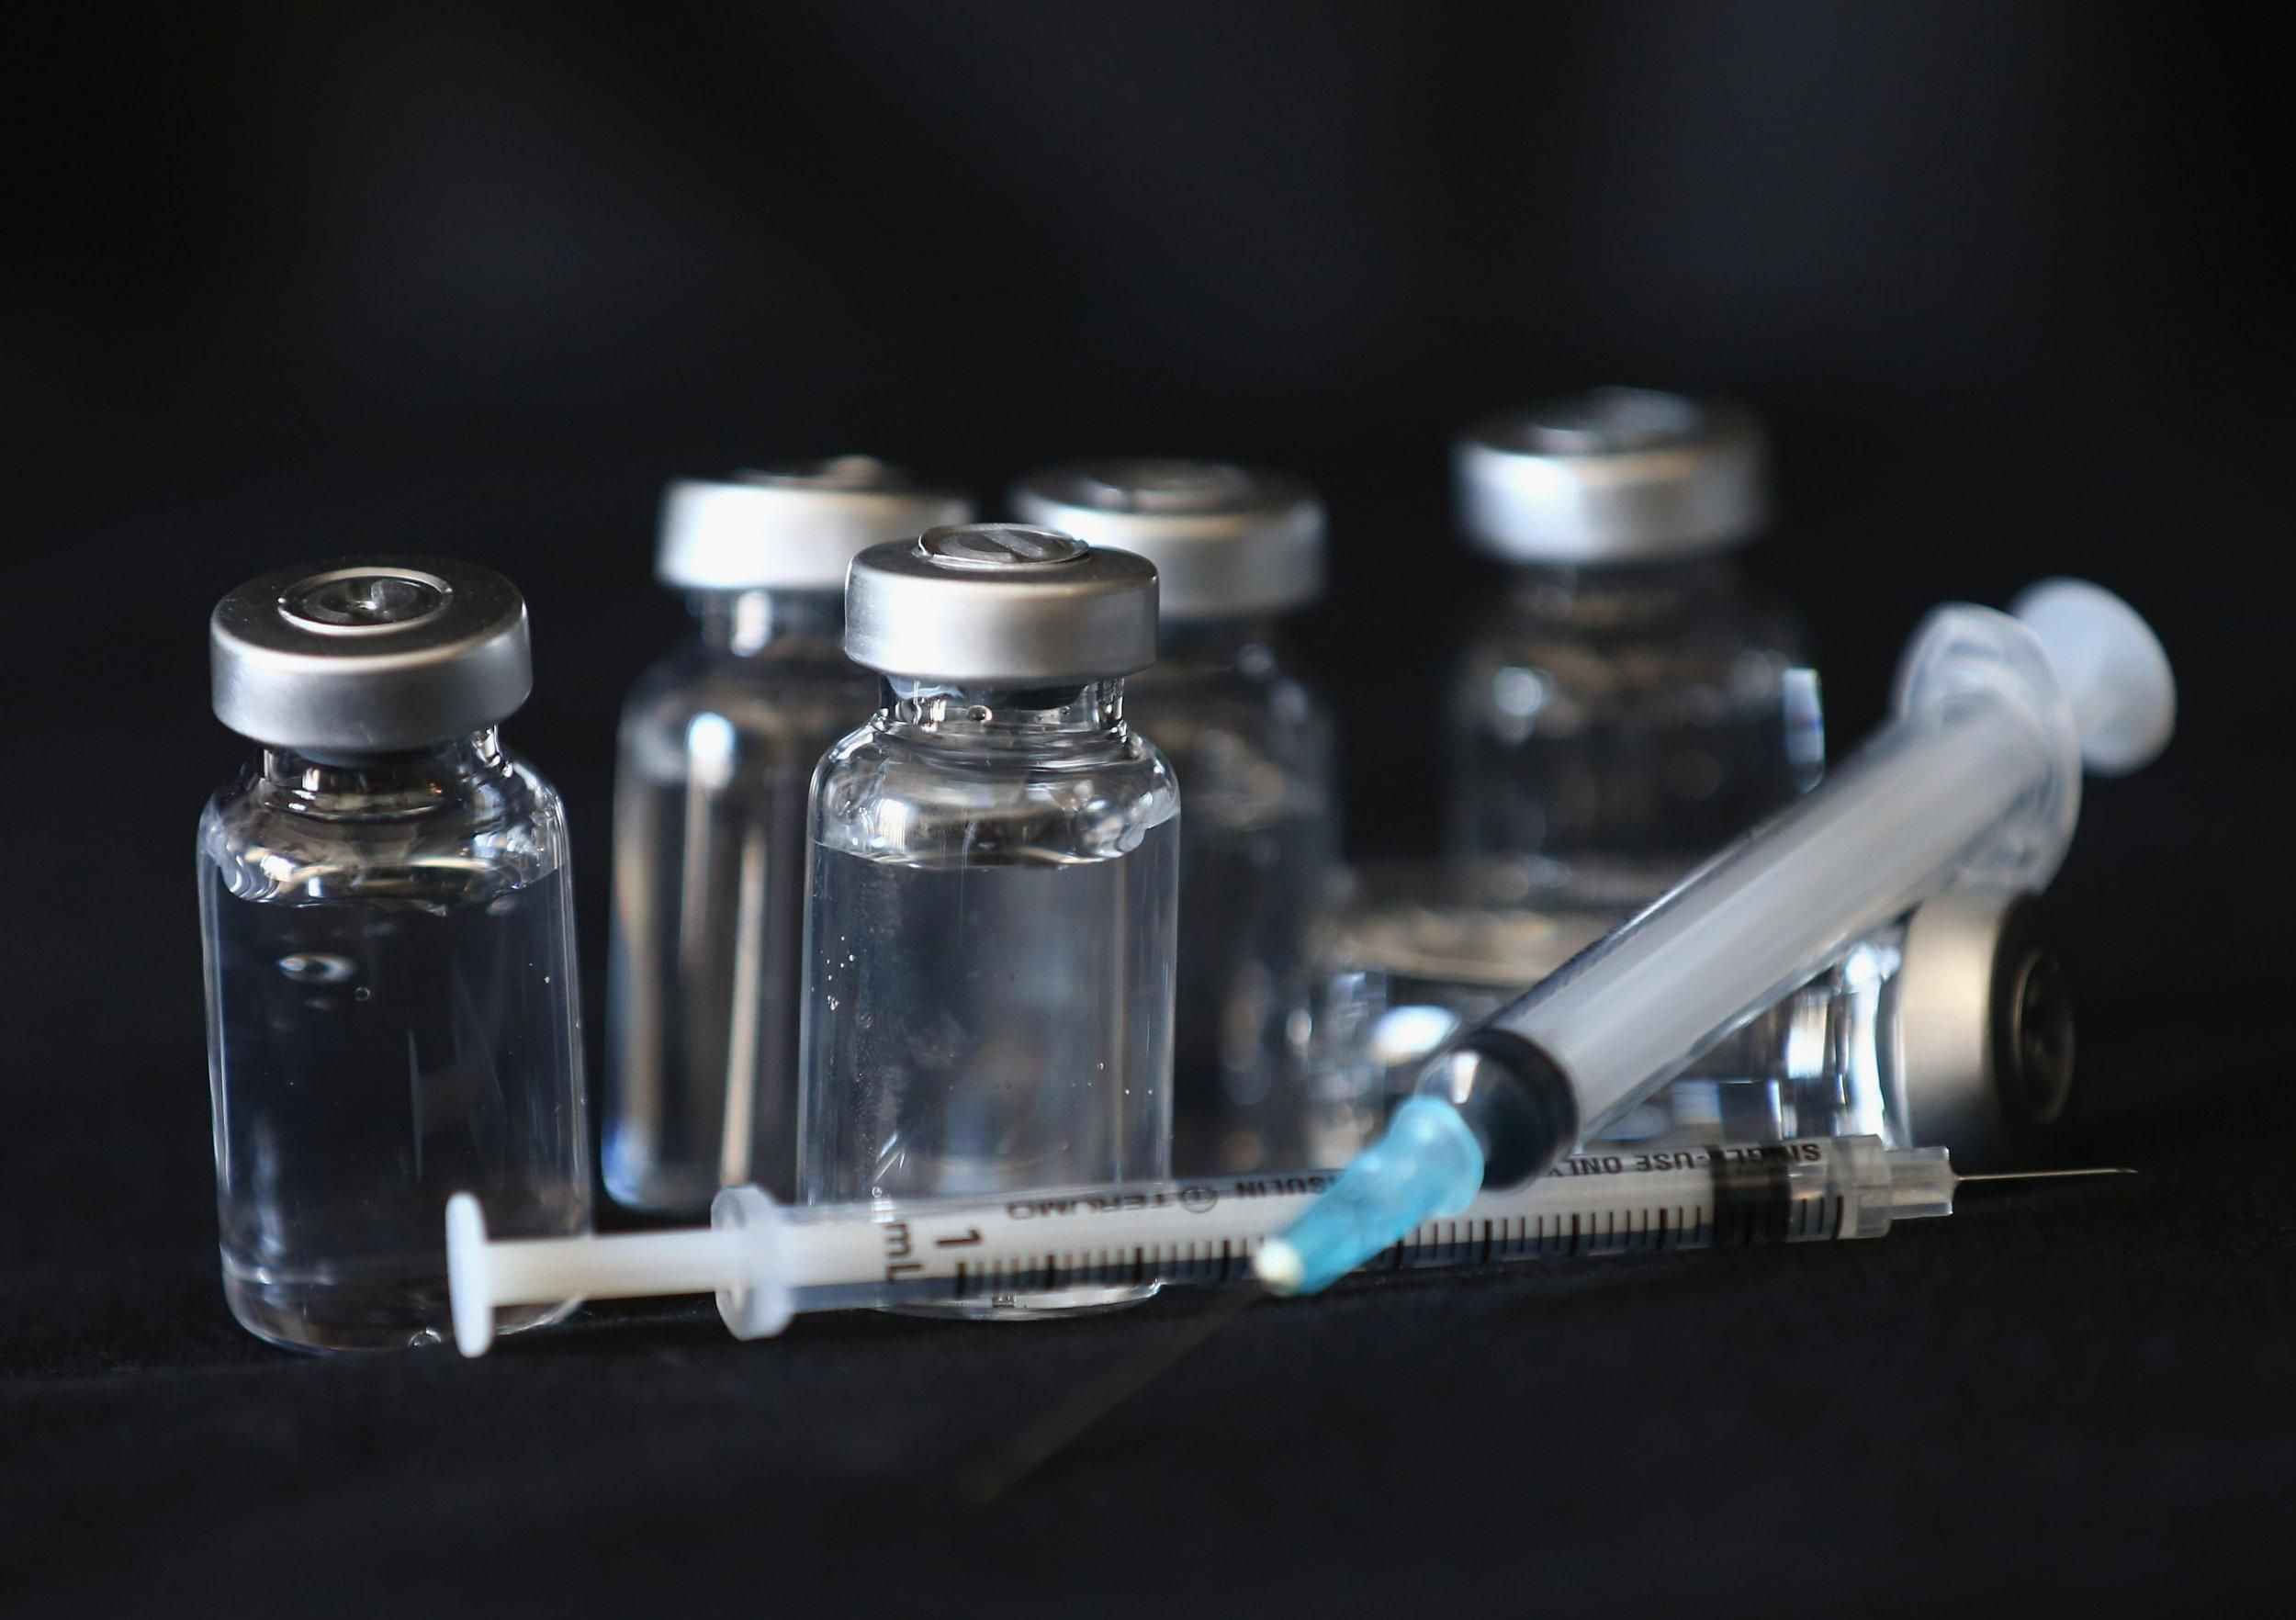 Вакцина против COVID-19 через год – оптимистичный сценарий преодоления пандемии, – агентство ЕС